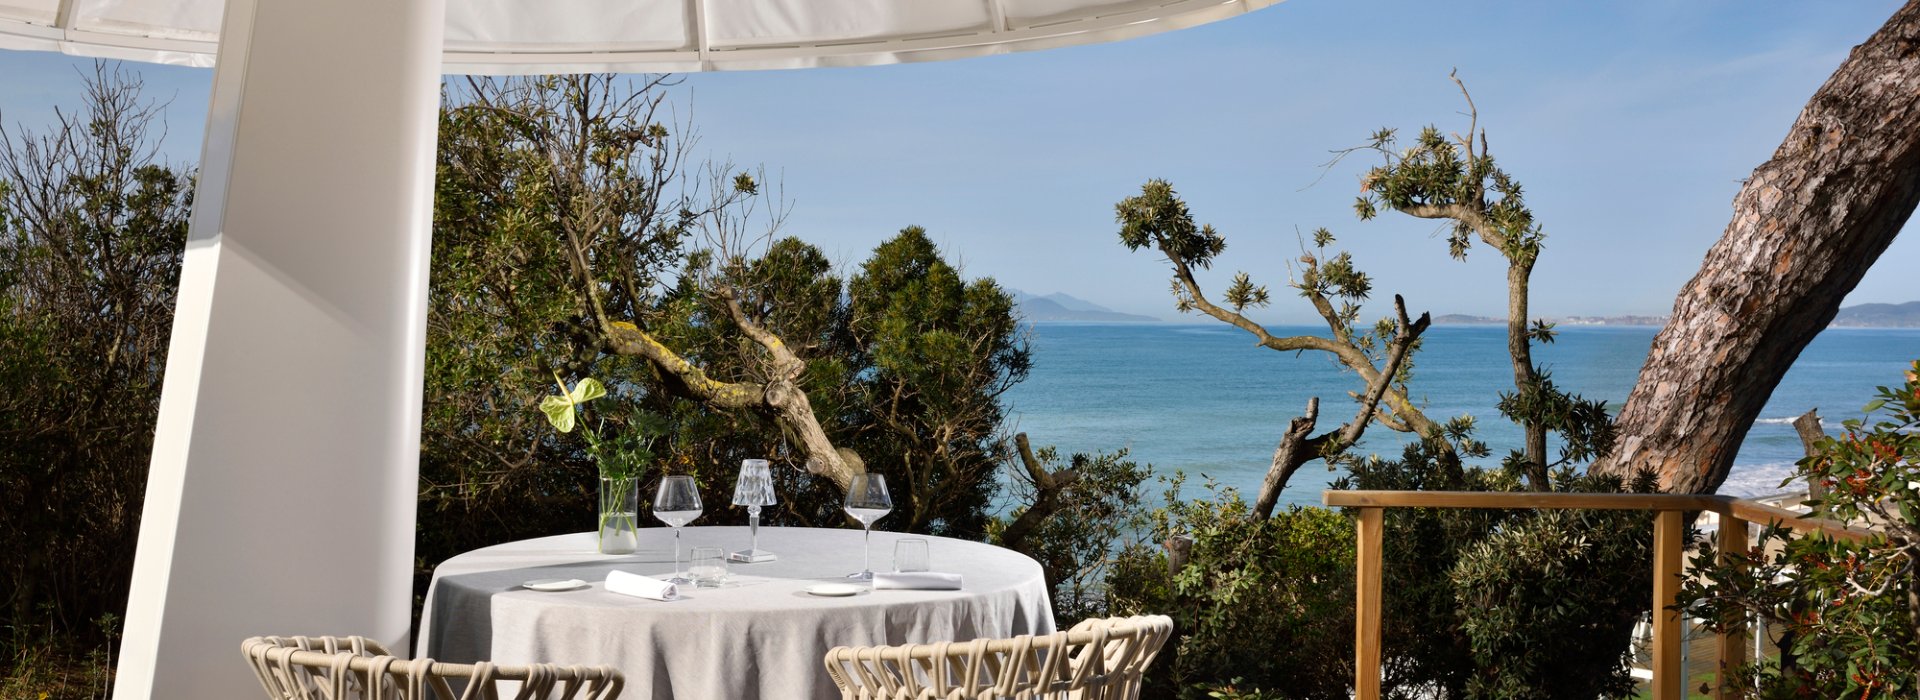 Resort all inclusive, cena romantica su terrazza panoramica privata vista mare in Toscana